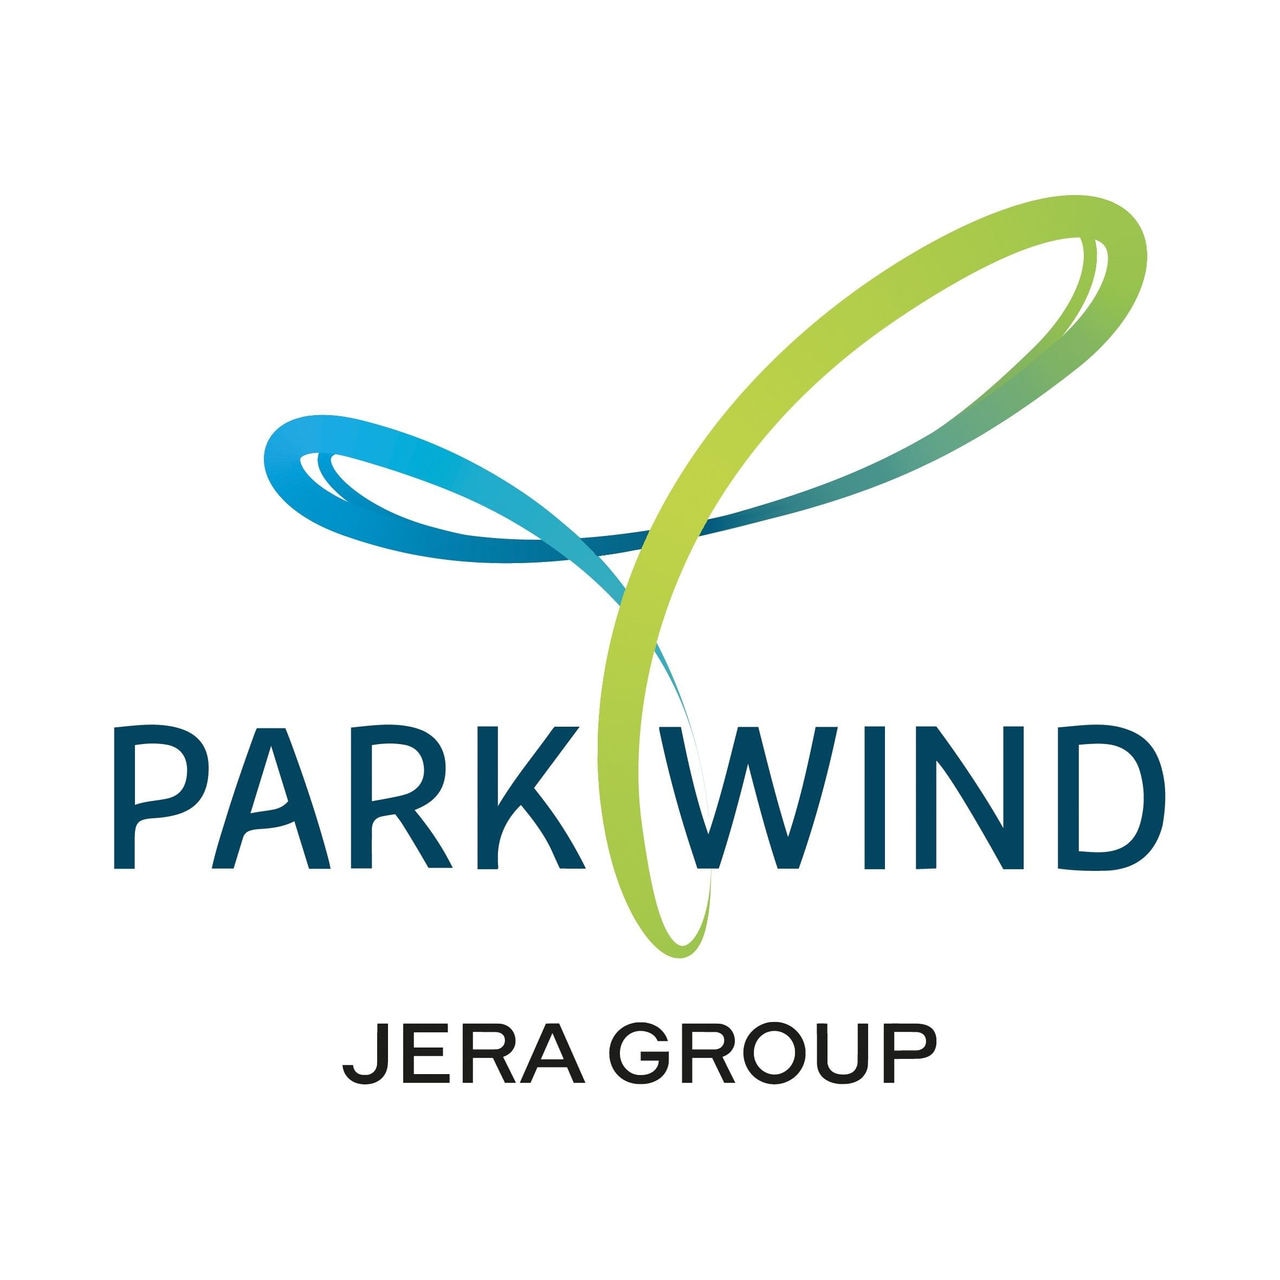 Parkwind Logo